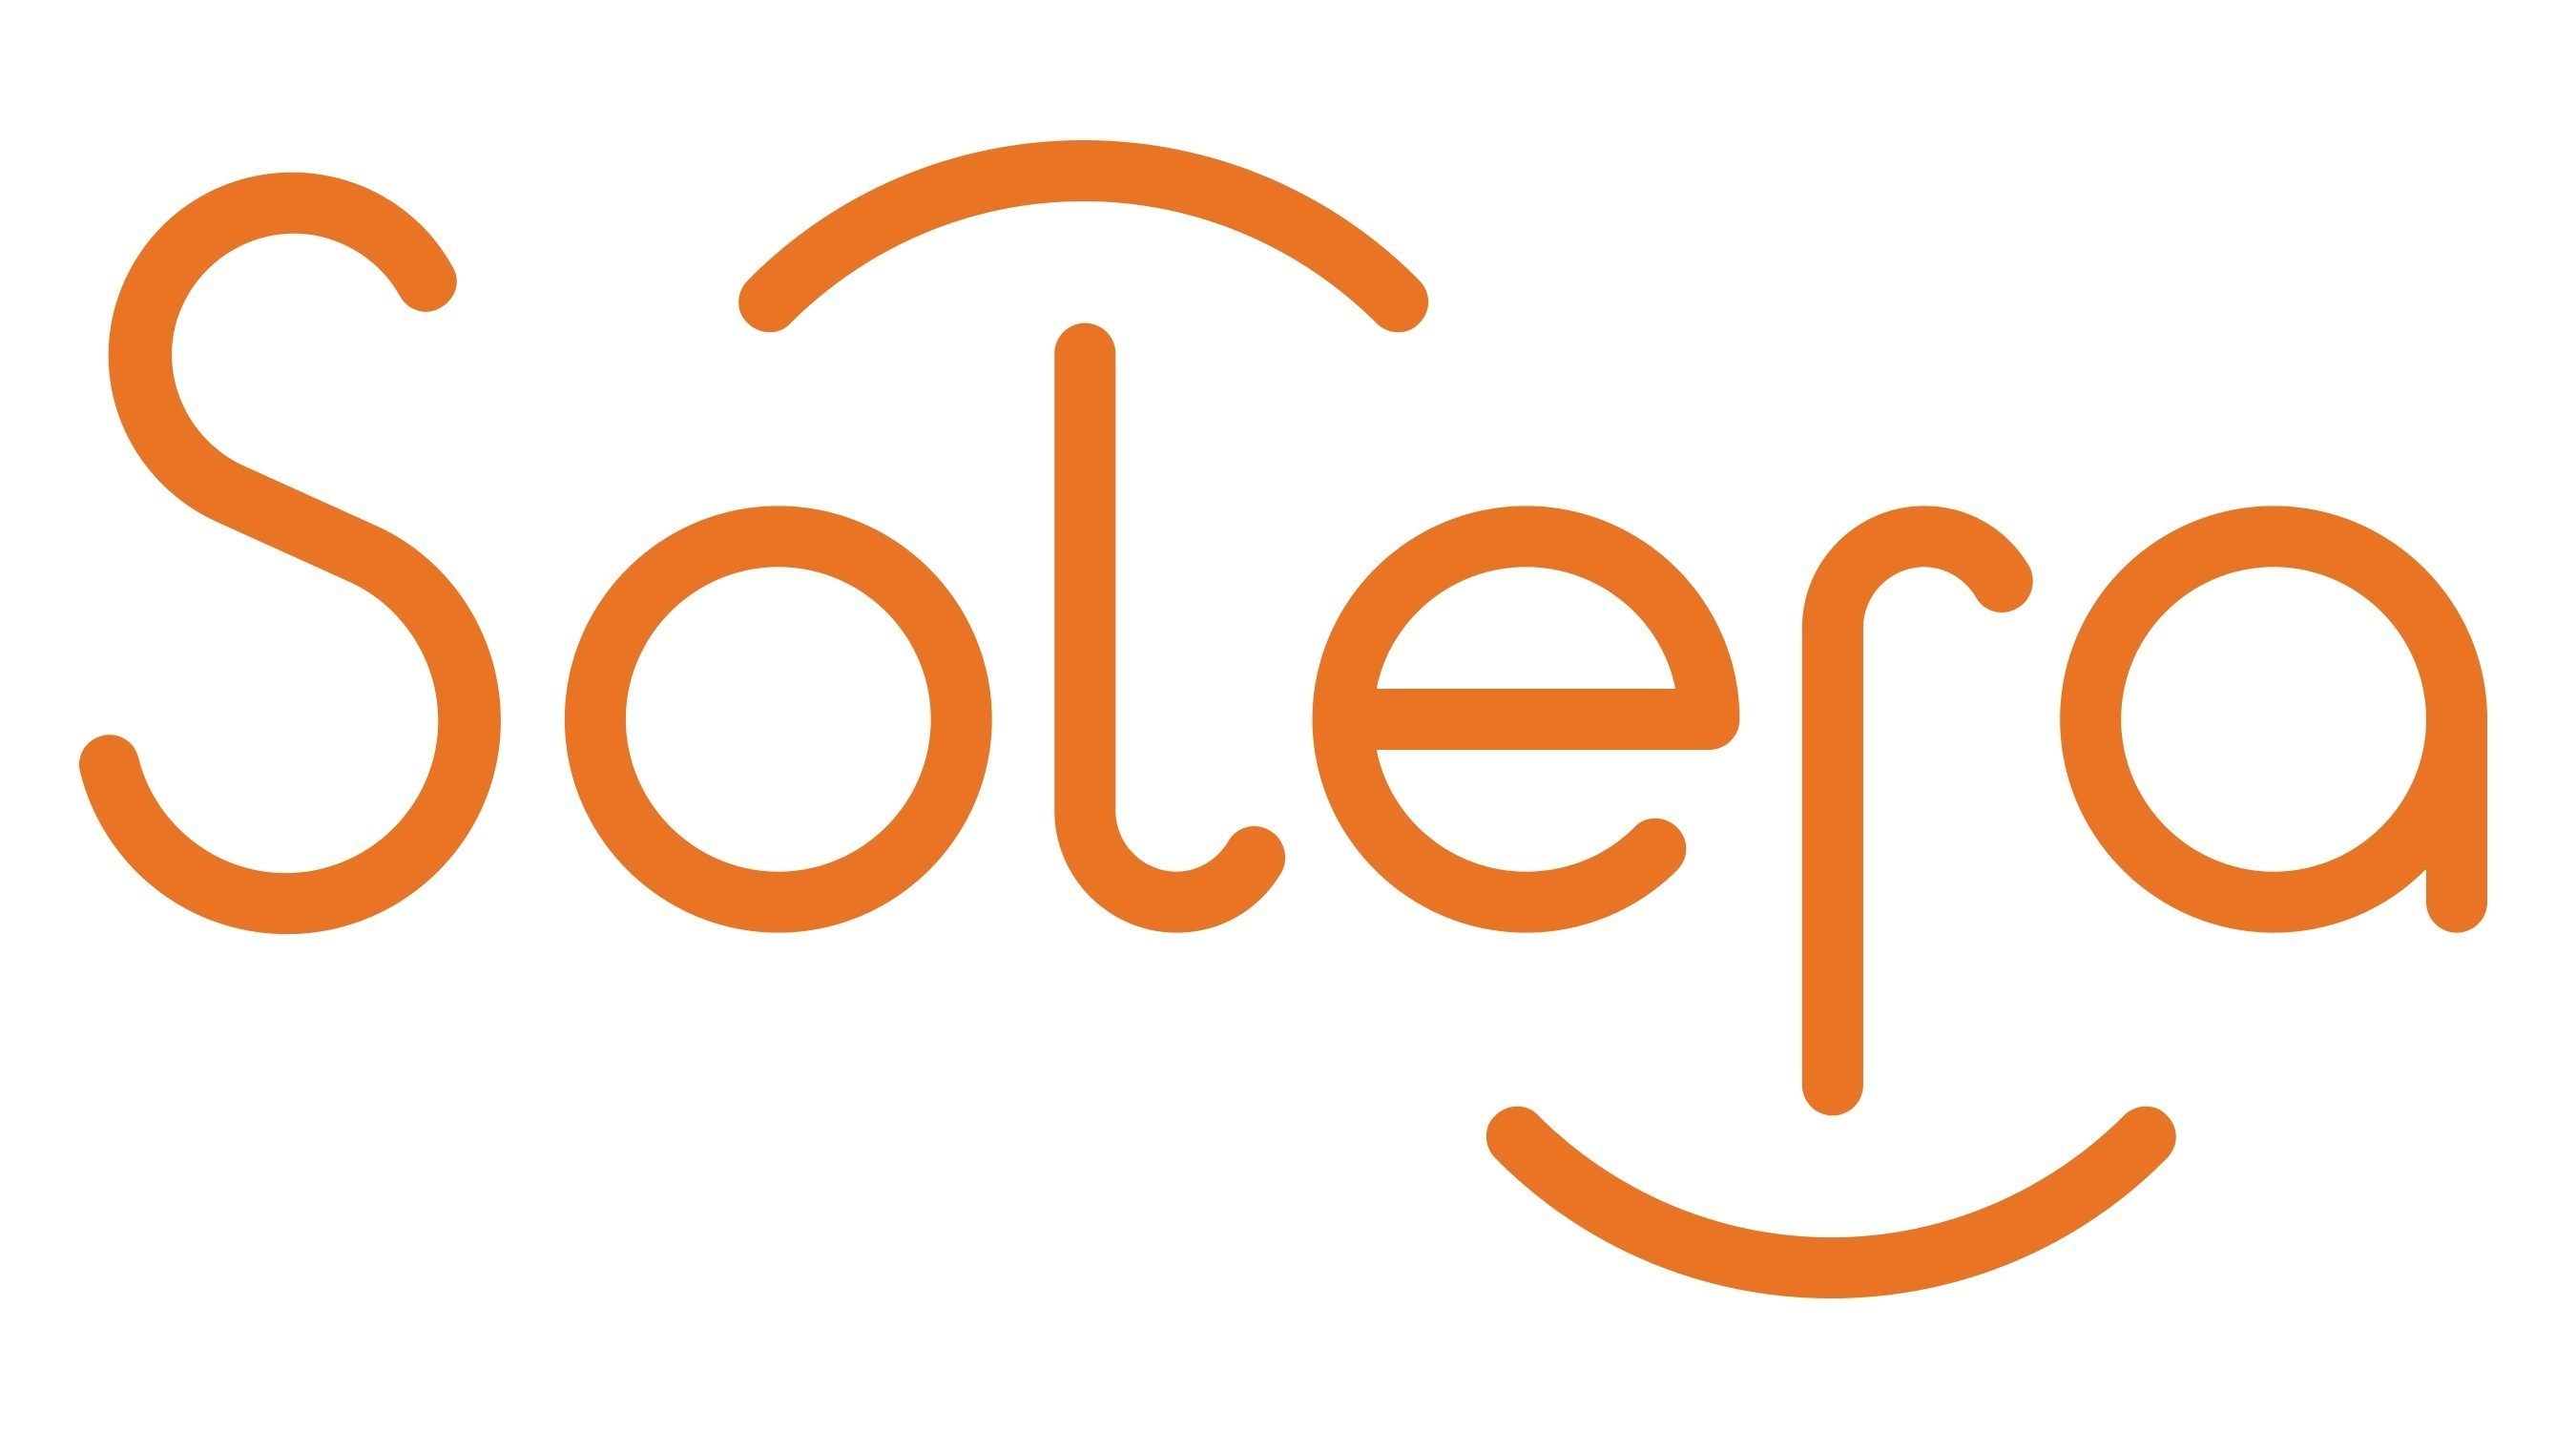 Solera Logo.